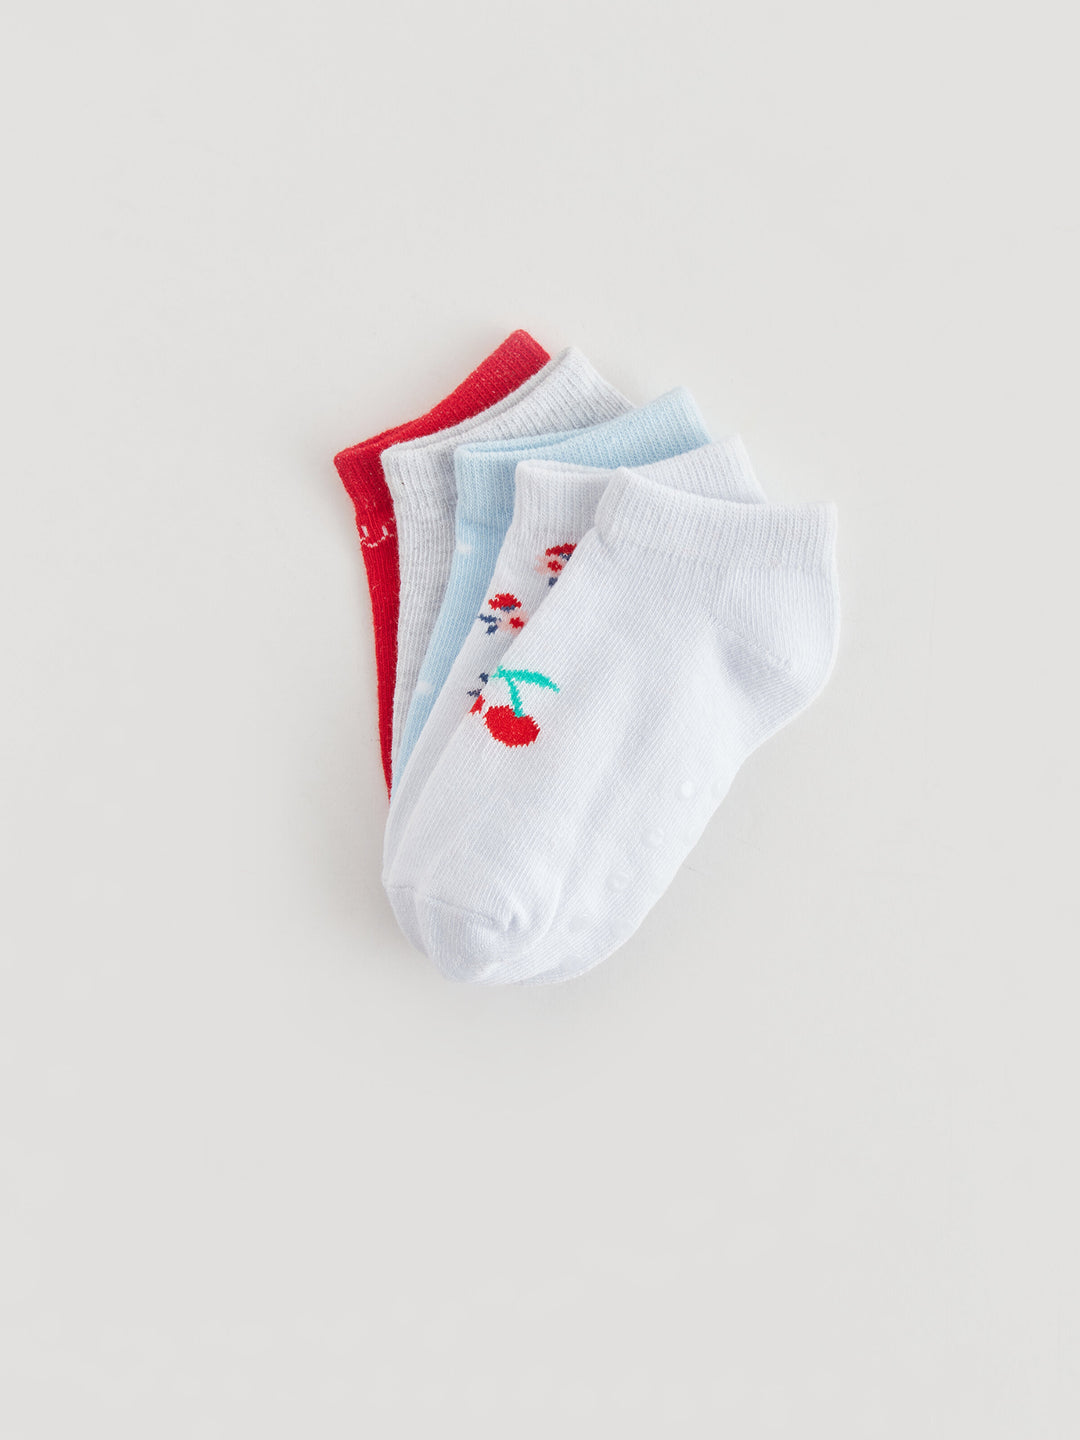 Printed Baby Girls Booties Socks Pack Of 5